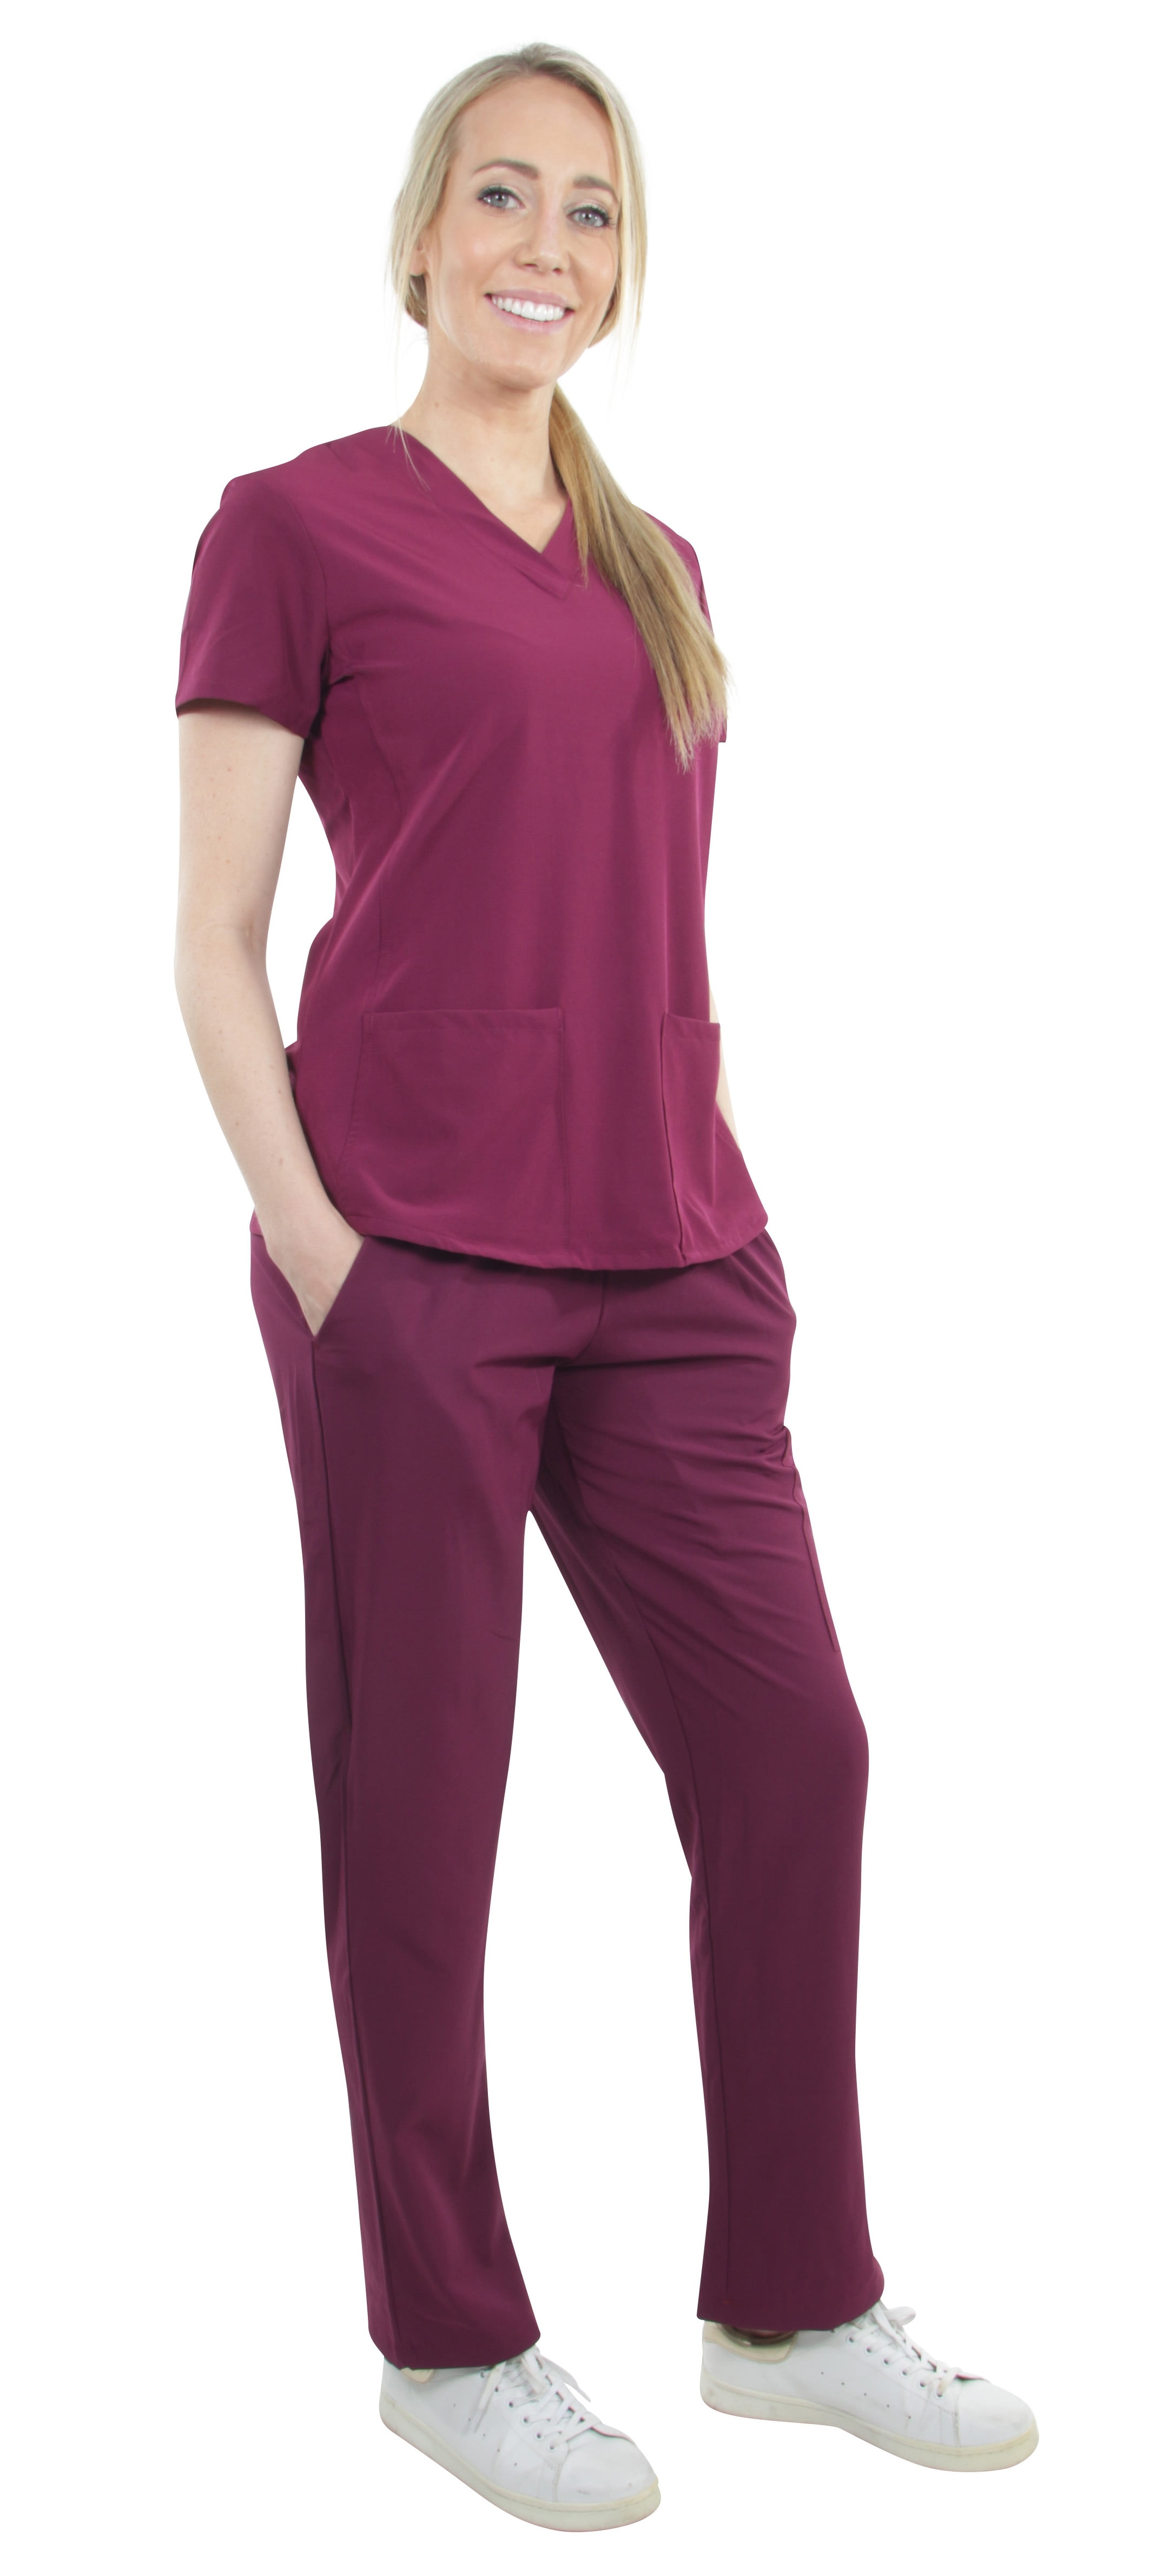 Unisex Stretch Medical Uniform Five Pockets V-Neck Scrubs Sets with Side Panels 